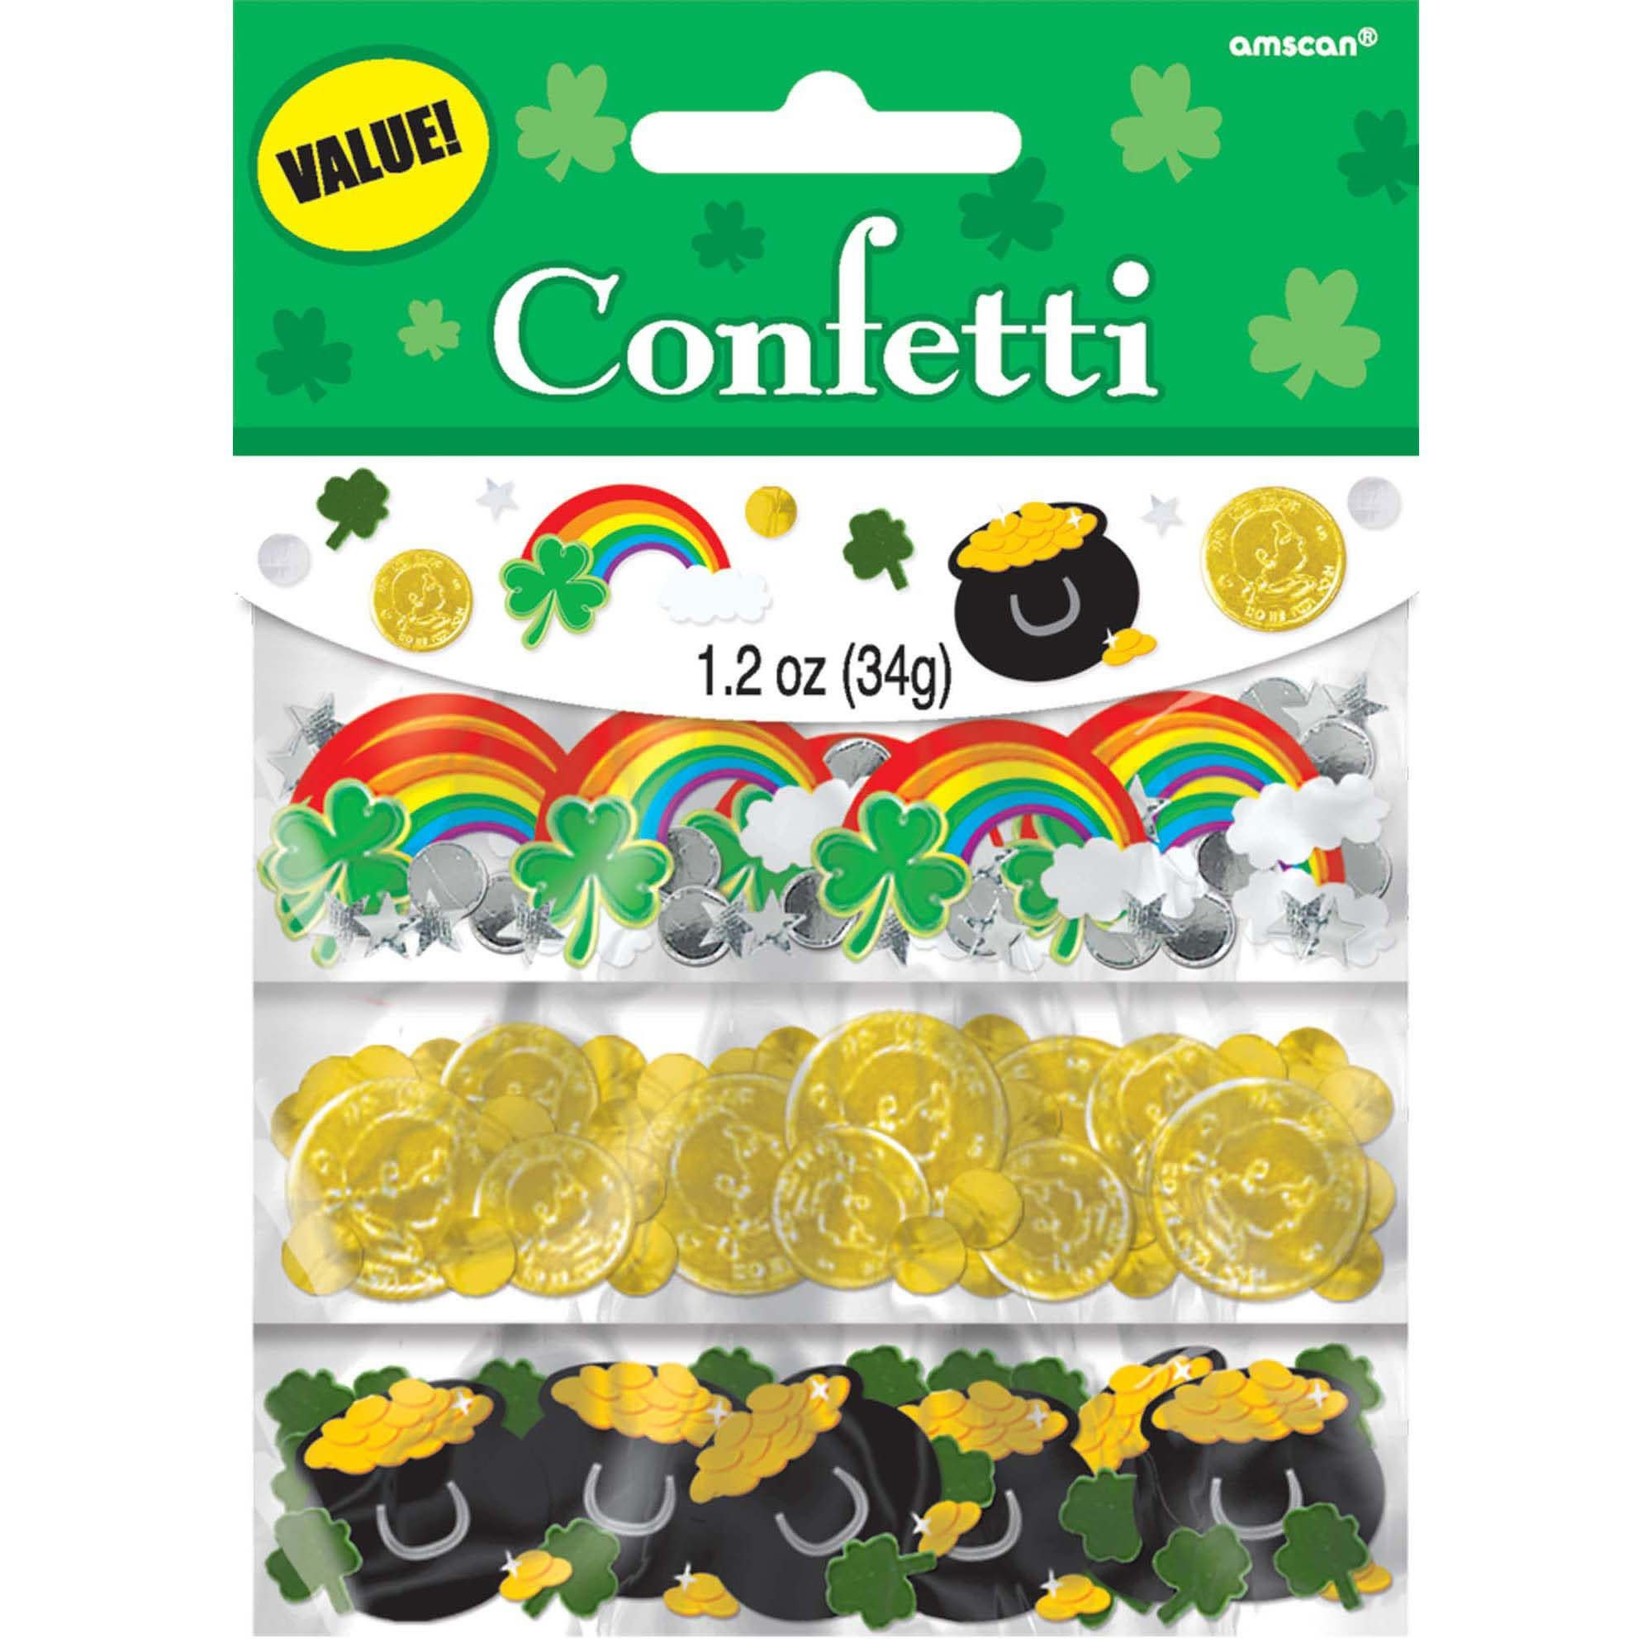 Amscan St. Patrick's Day Value Confetti